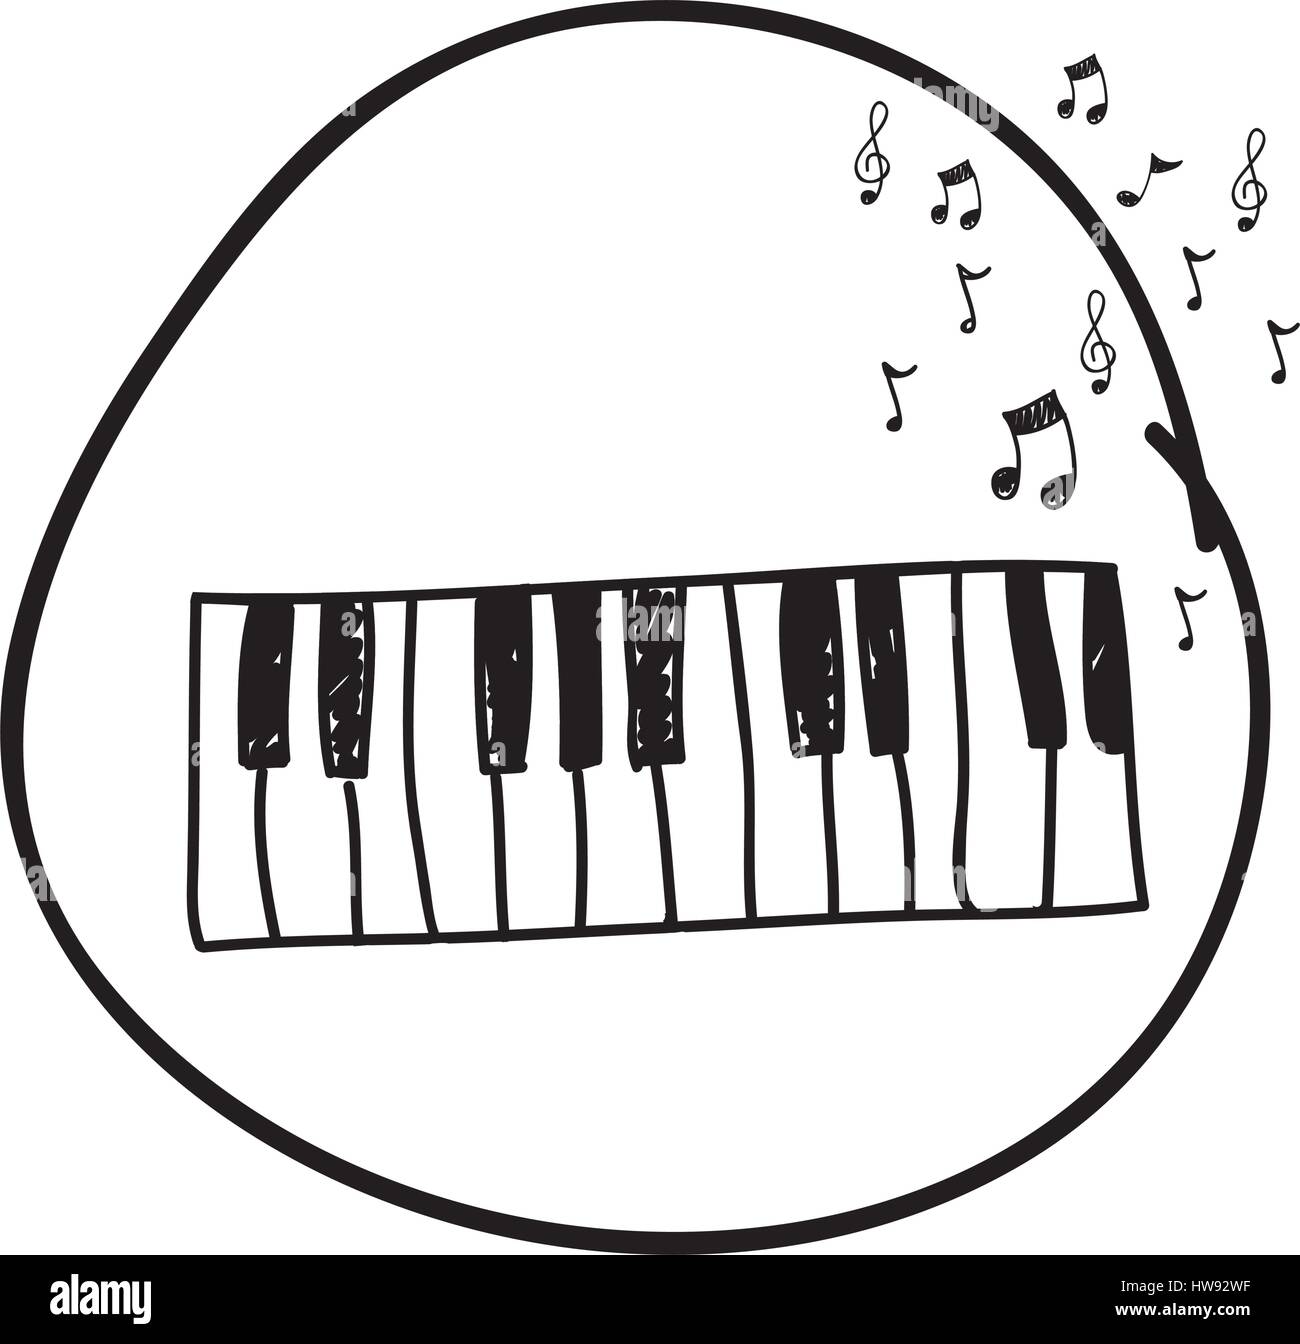 Dessin monochrome de clavier de piano en cercle et des notes de musique  Image Vectorielle Stock - Alamy